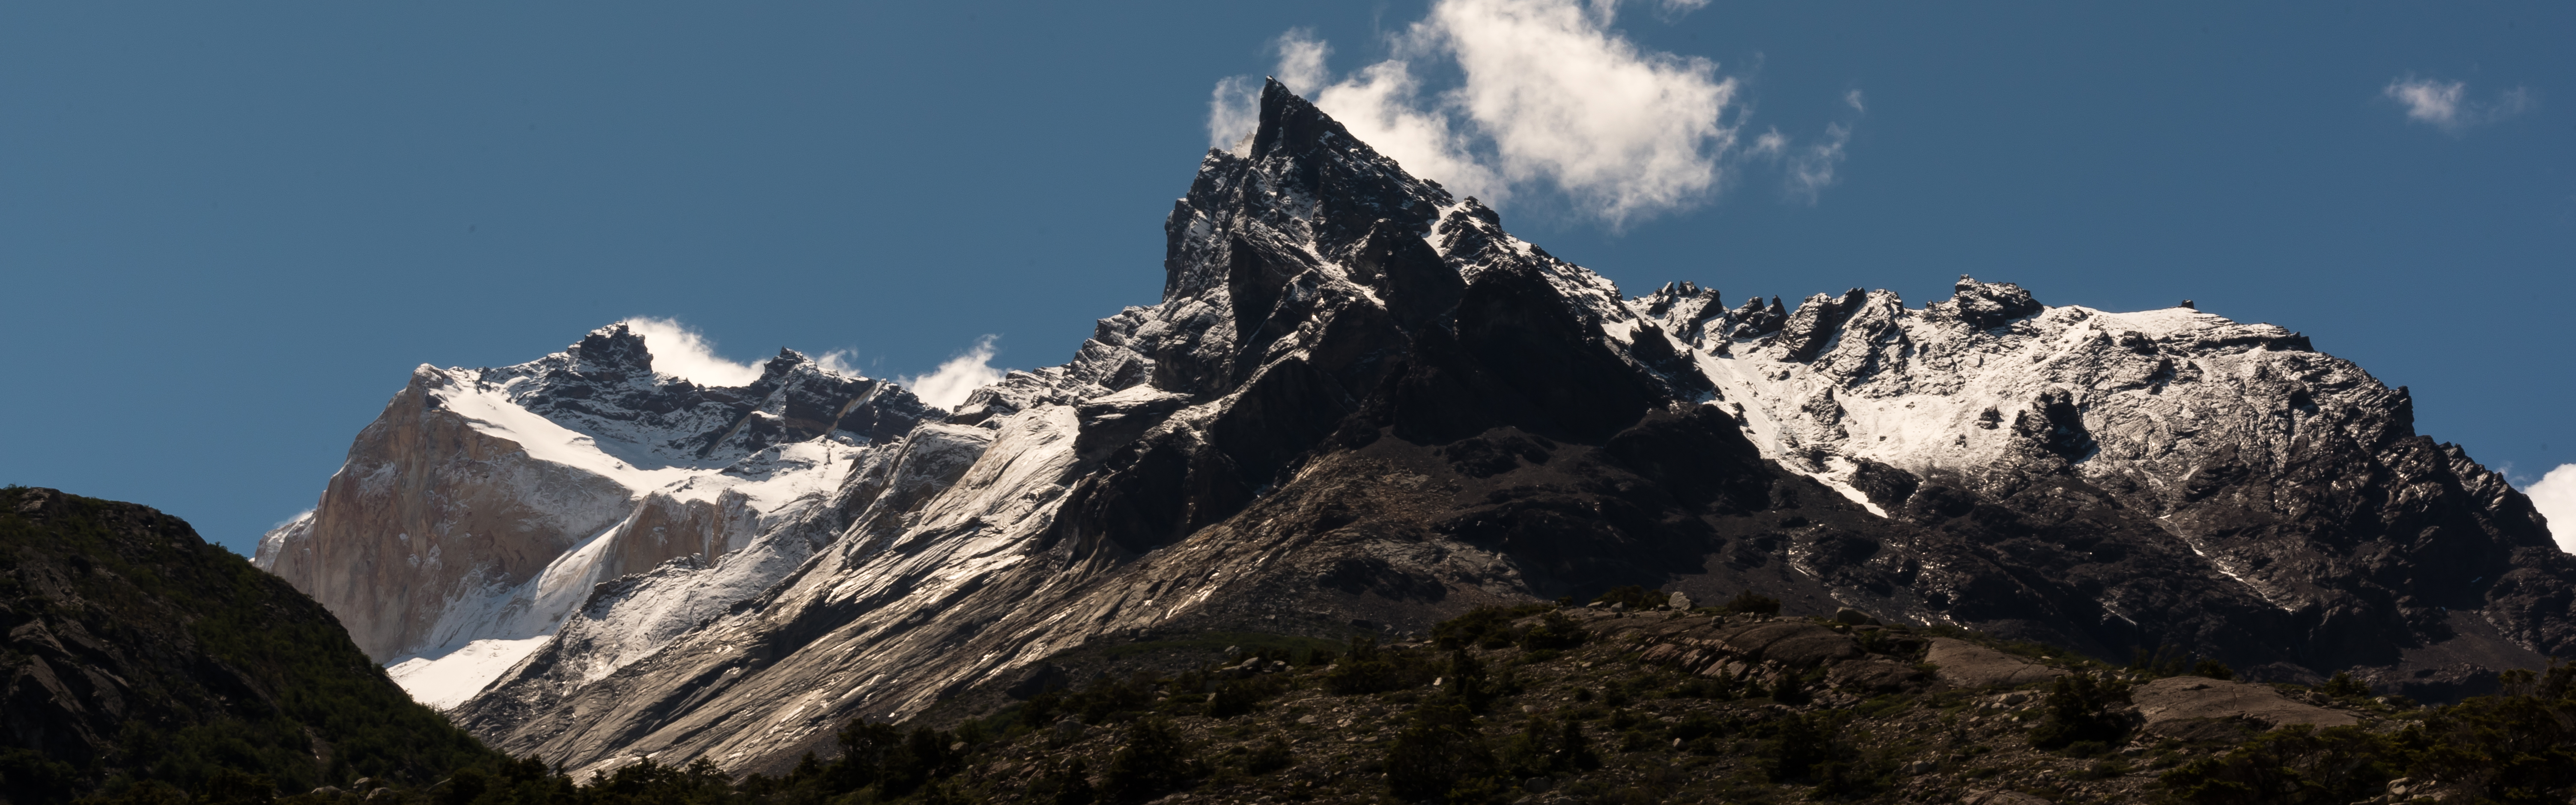 W Trek Torres Del Paine Chile